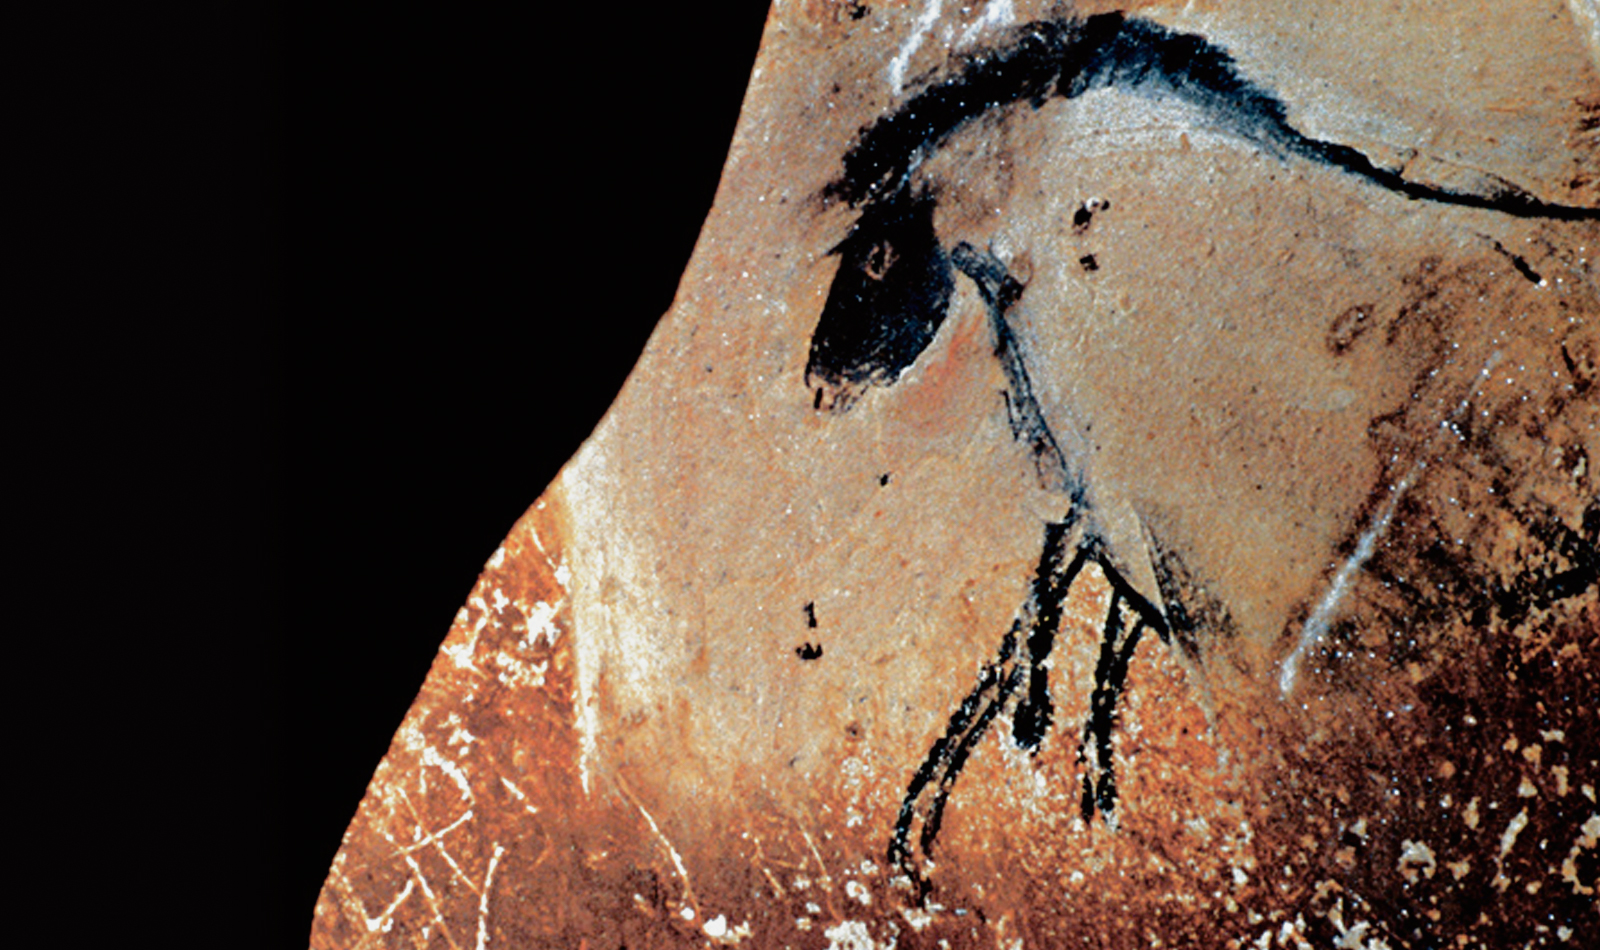 Horse Horses Chauvet Cave Paintings Rock Art France Bradshaw Foundation